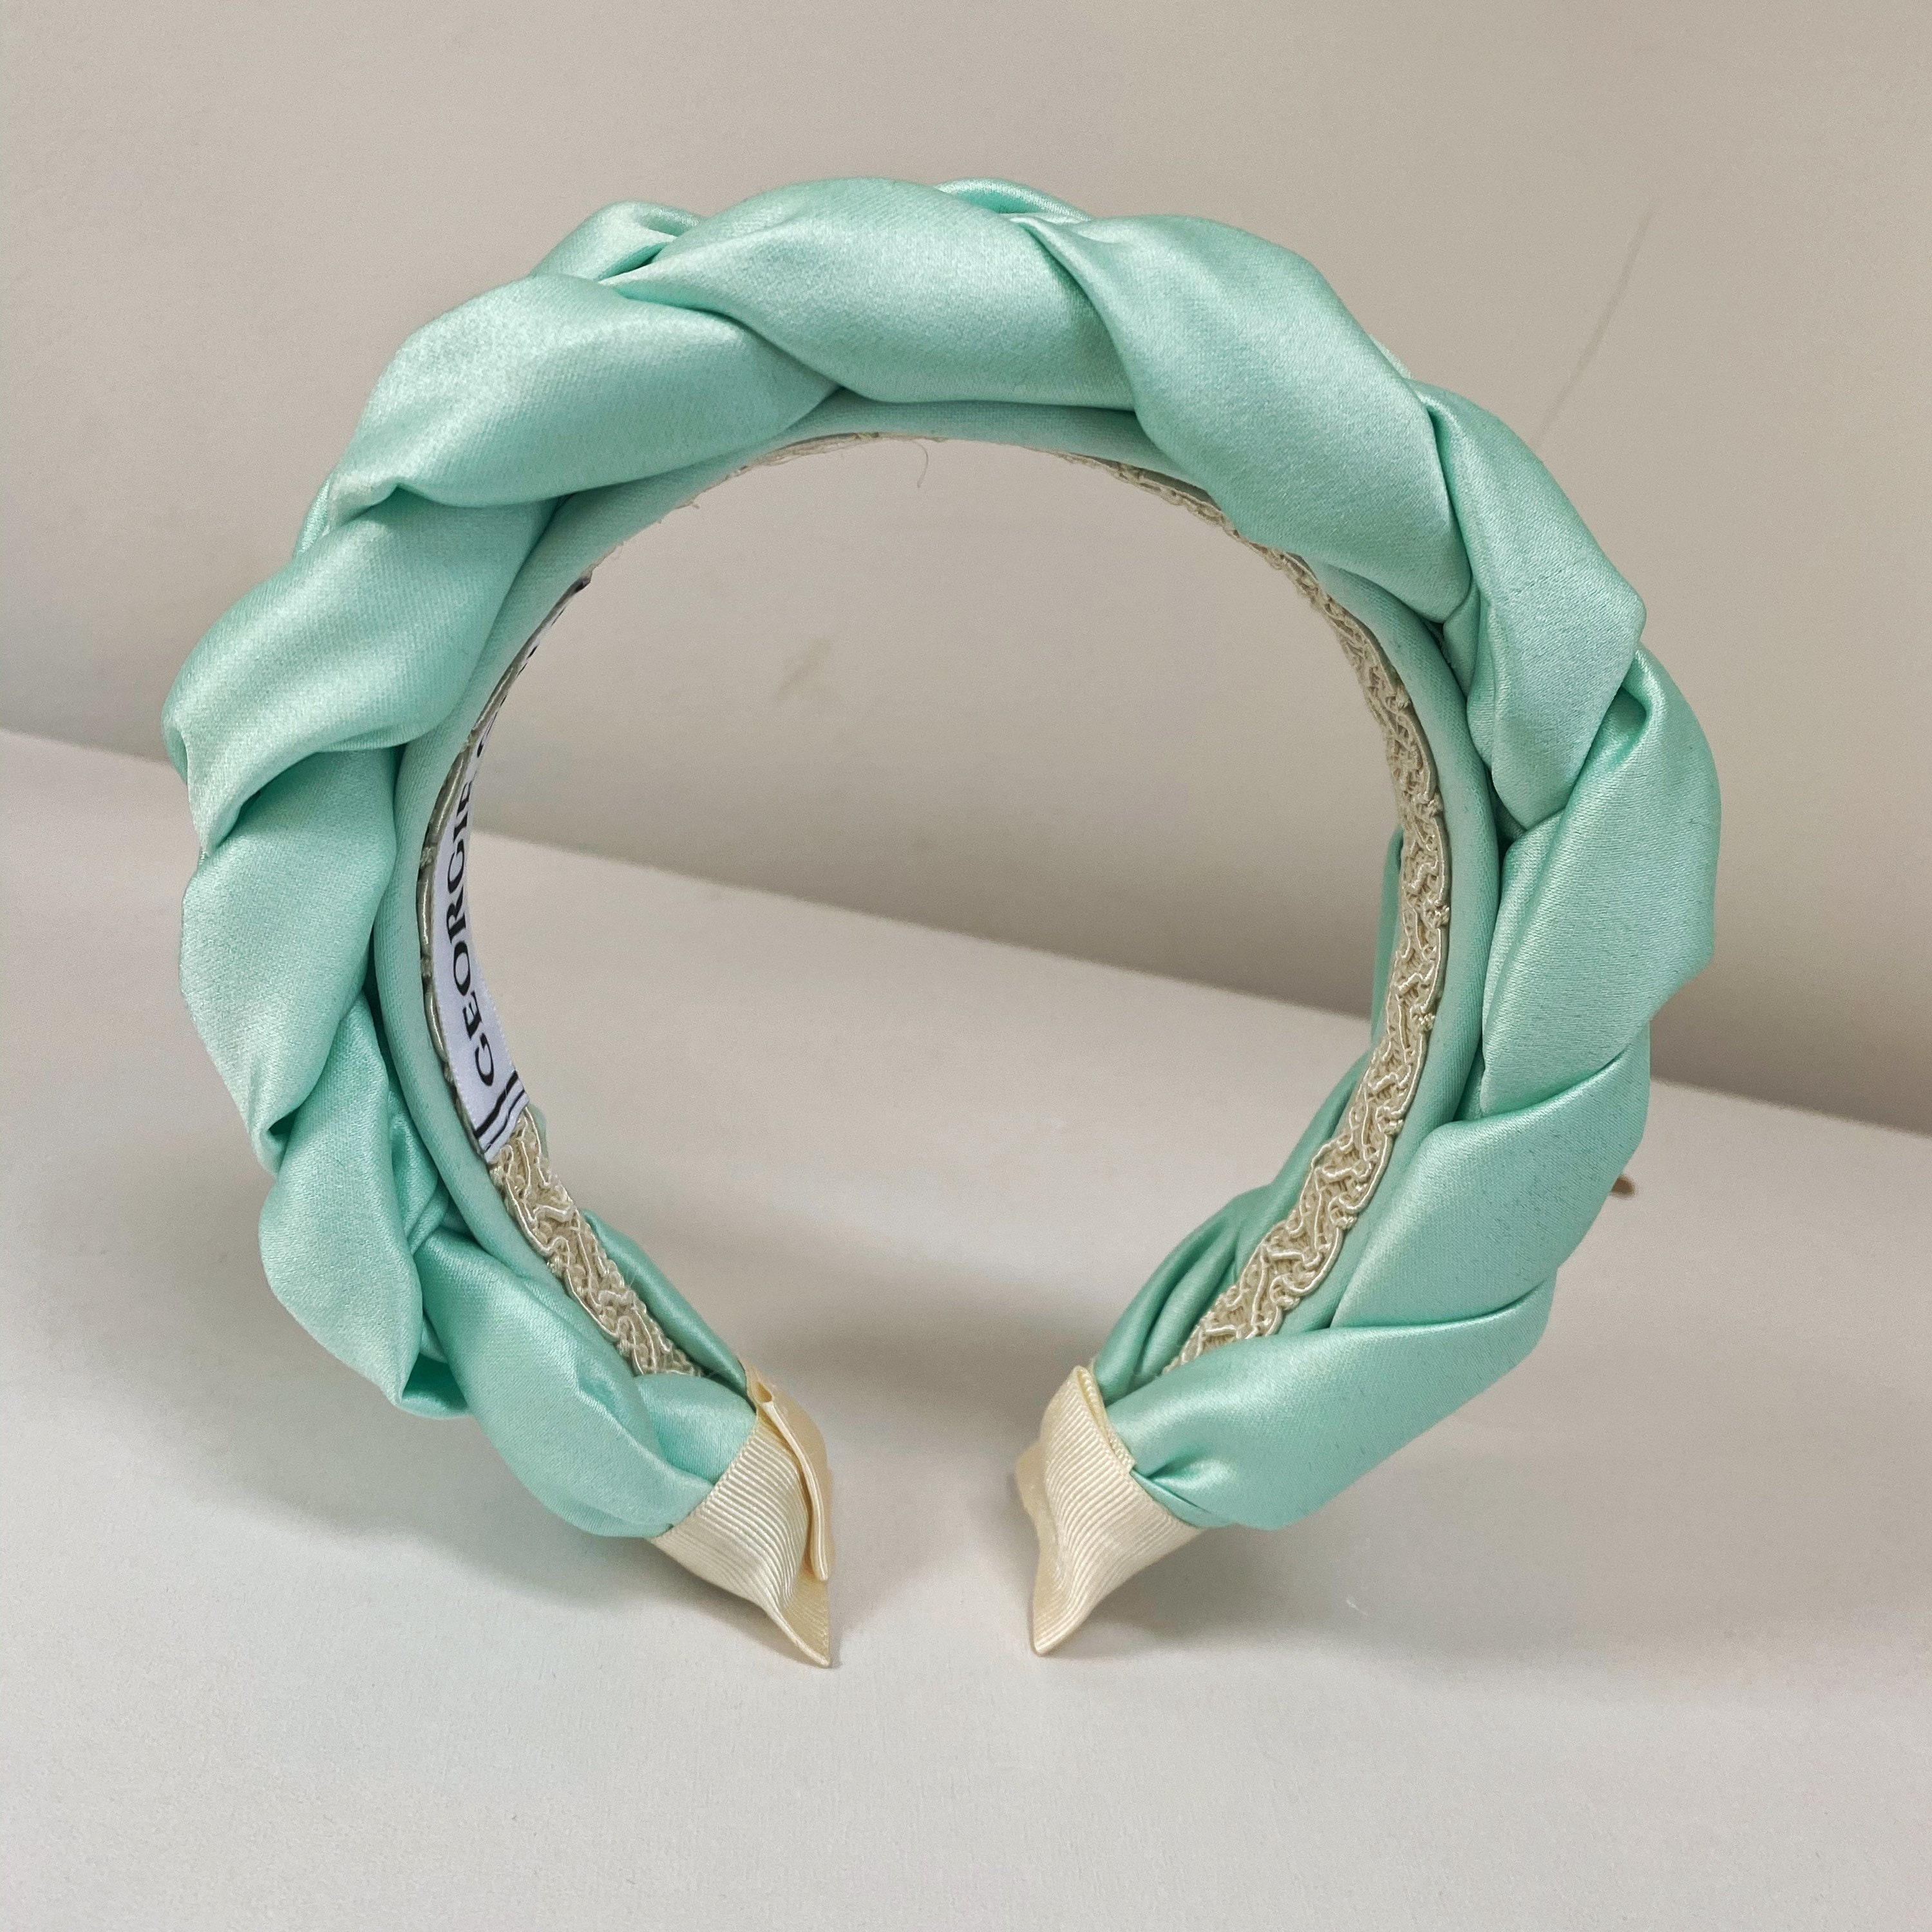 Turquoise Duchess Satin Braided Headband Aqua Blue Plaited Etsy